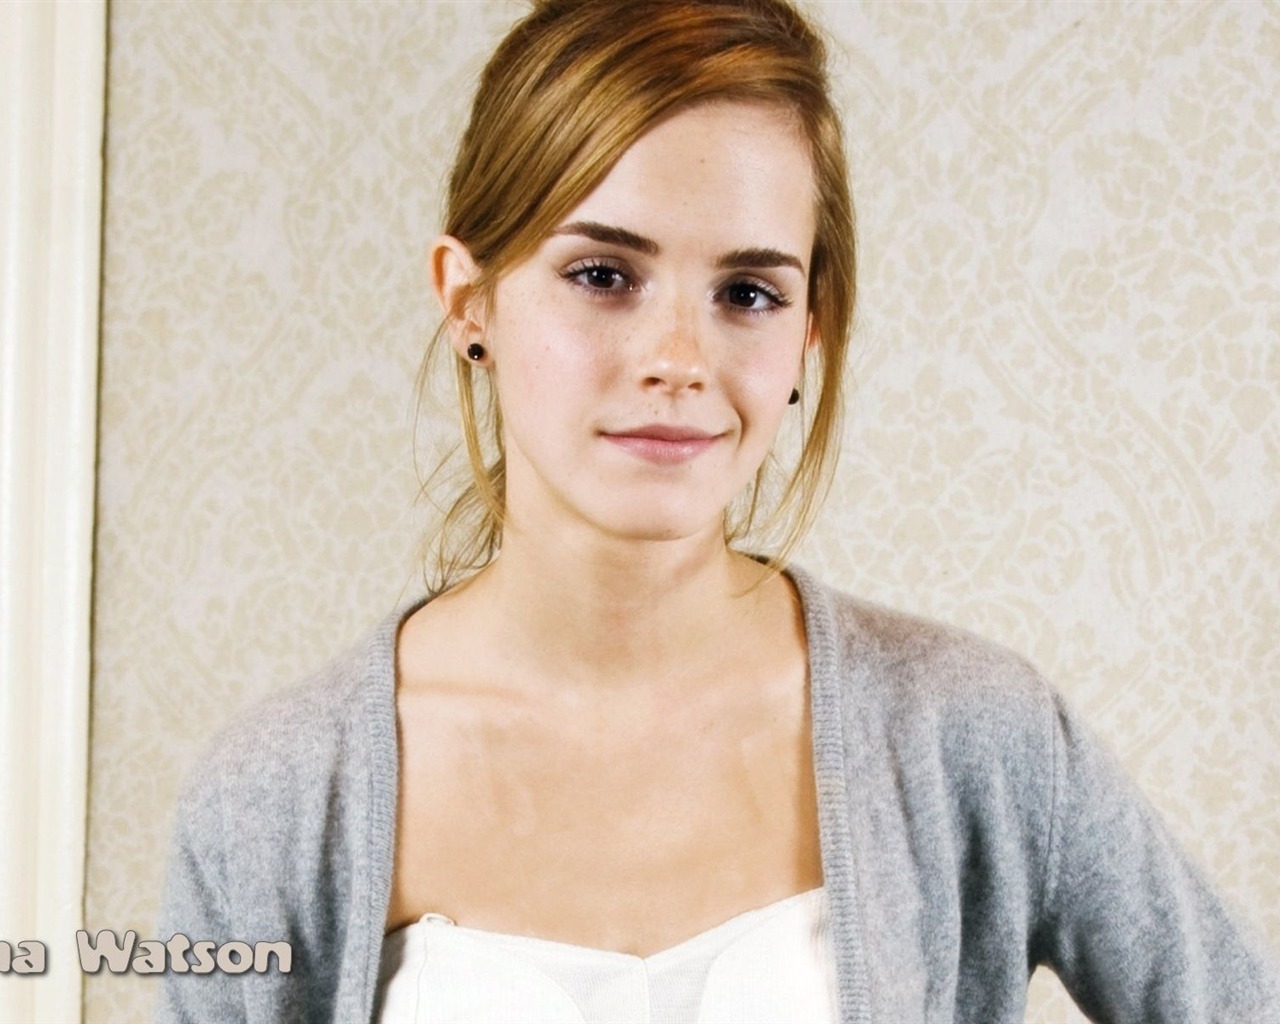 Emma Watson 艾玛·沃特森 美女壁纸34 - 1280x1024